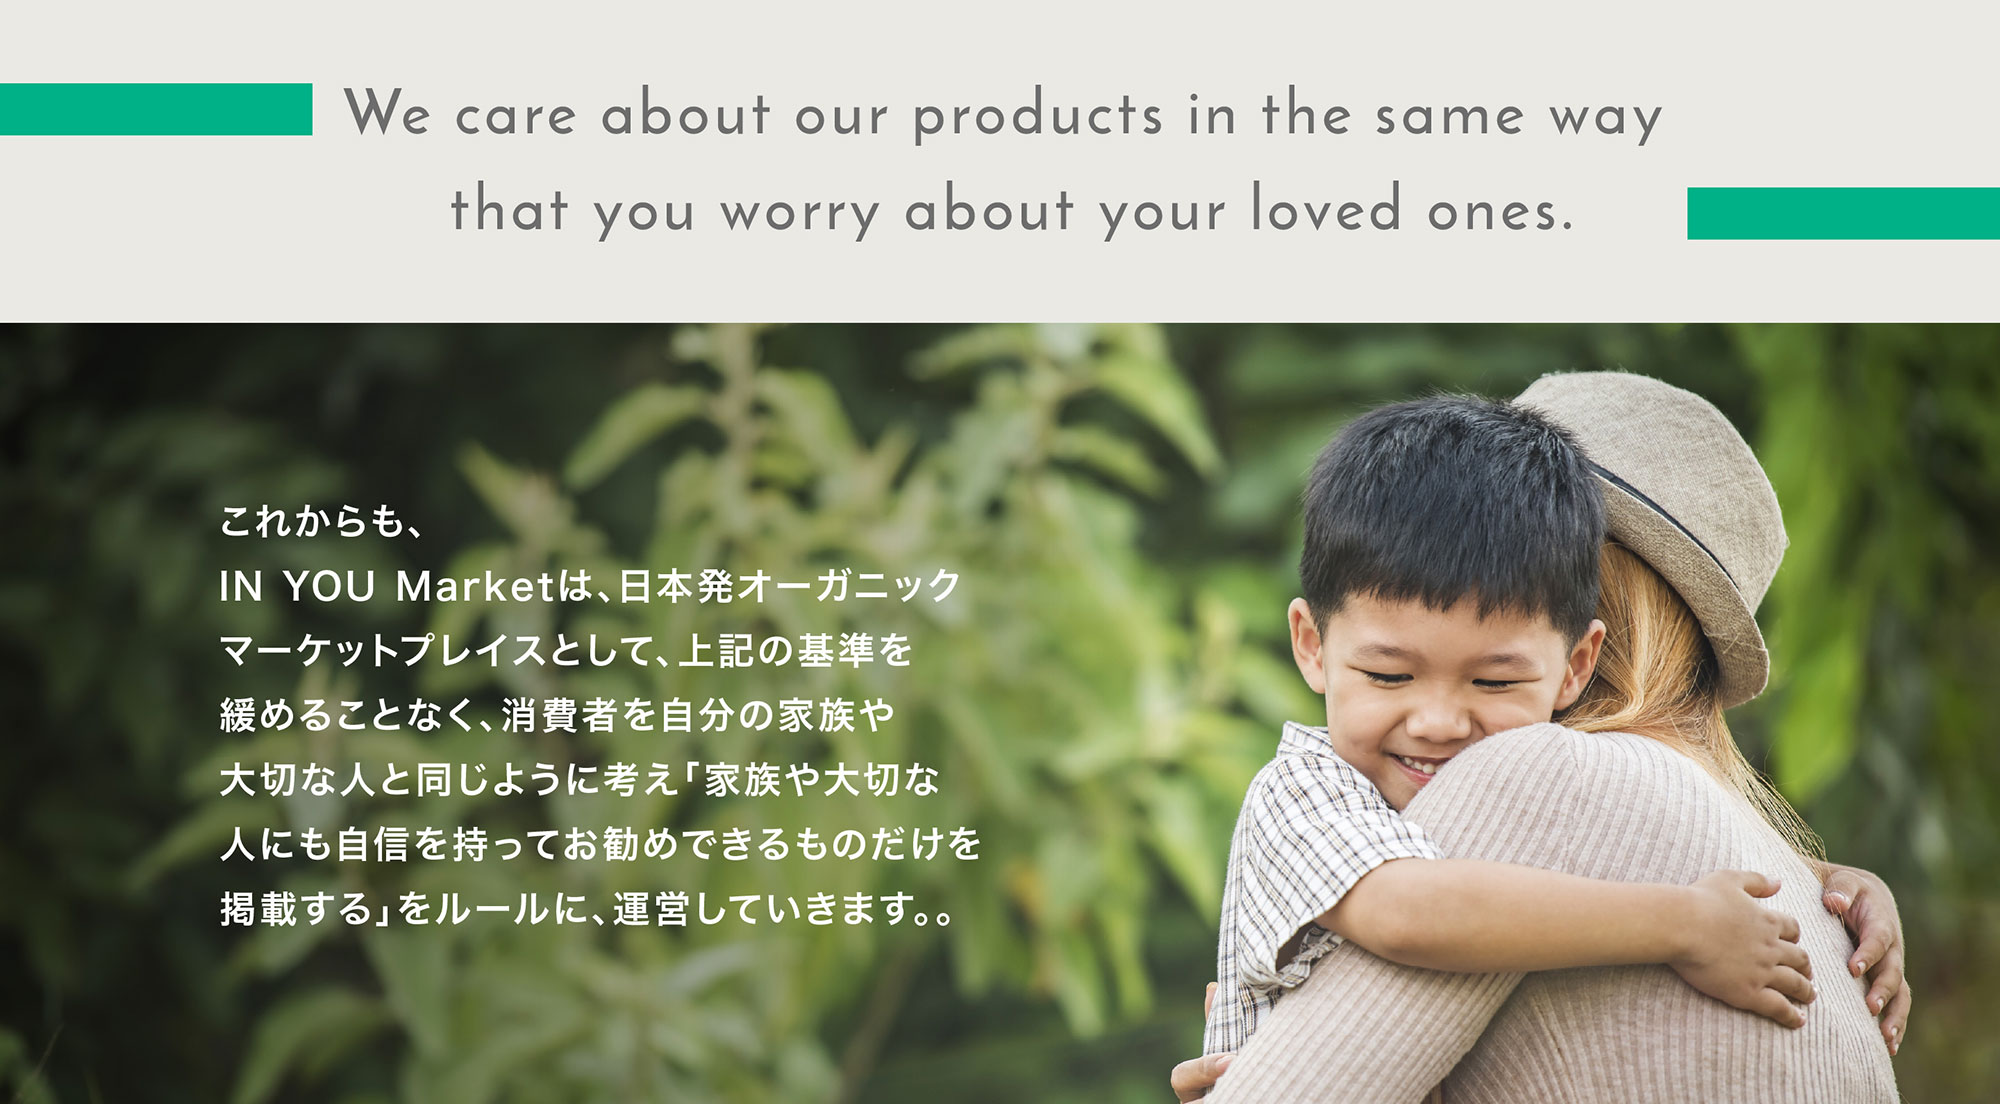 これからも、IN YOU Marketは、日本発オーガニックマーケットプレイスとして、上記の基準を緩めることなく、消費者を自分の家族や大切な人と同じように考え「家族や大切な人にも自信を持ってお勧めできるものだけを掲載する」をルールに、運営していきます。